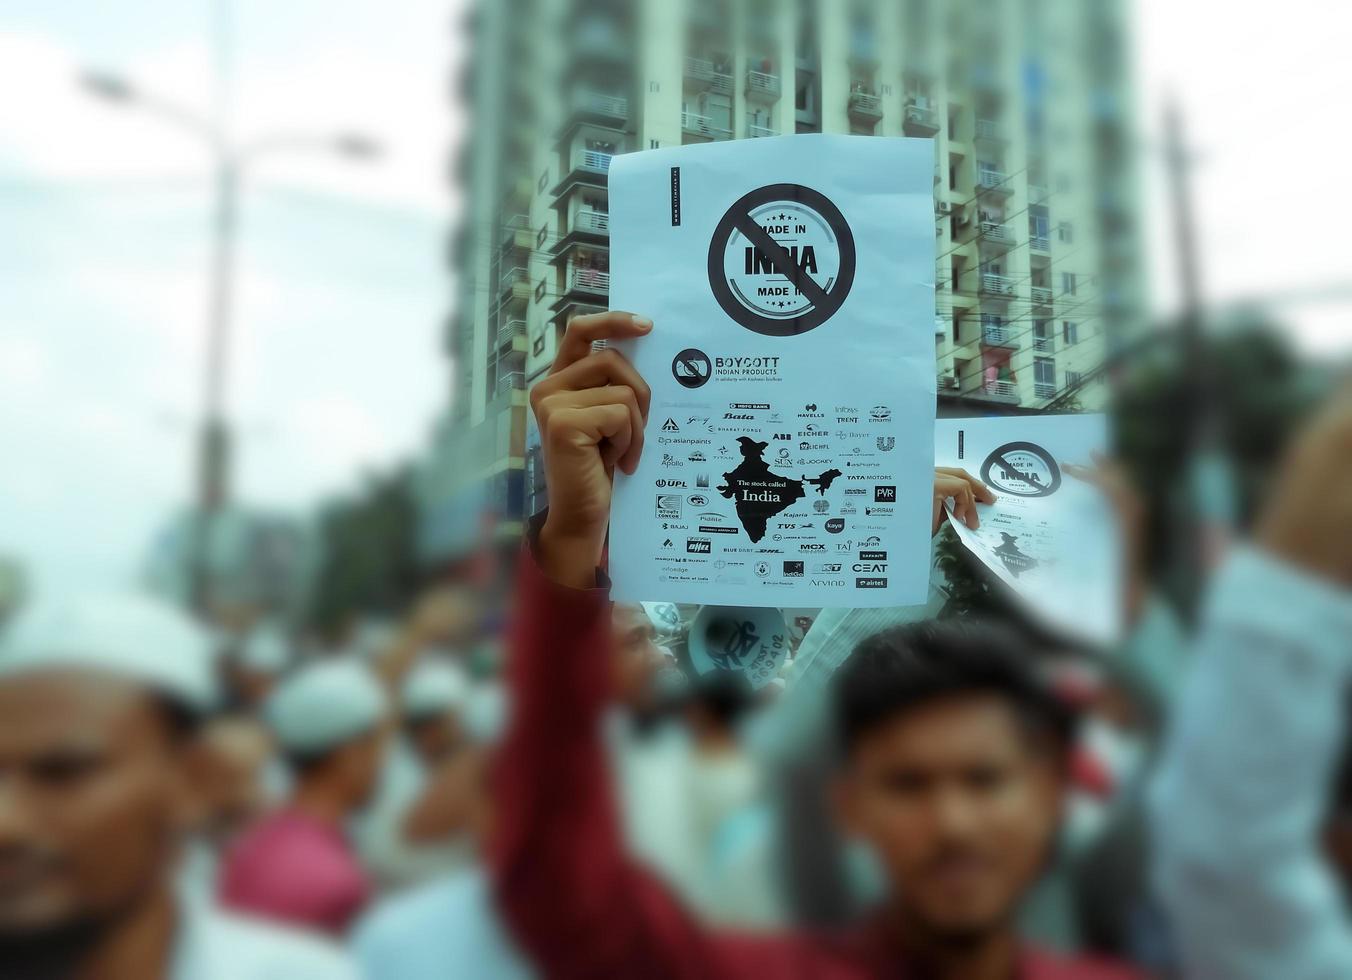 dhaka, 10 juni 2022 - protest mot muslimska demonstrationer som uppmanar till bojkott av indiska produkter och fördömer bgp-ledare för deras kommentarer över profeten Mohammeds karikatyrer. foto